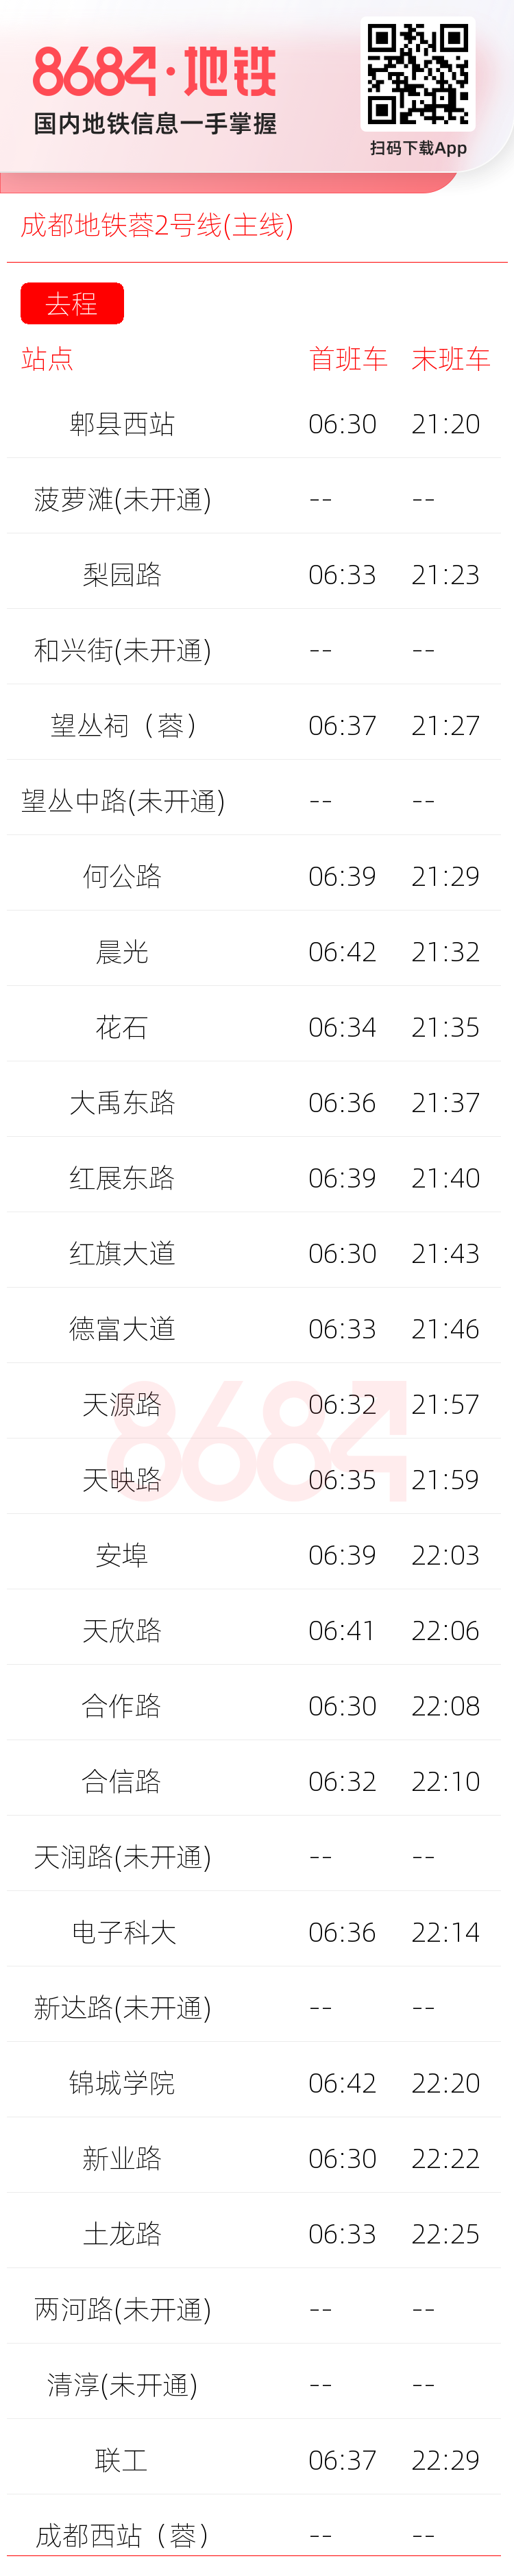 成都地铁蓉2号线(主线)运营时间表